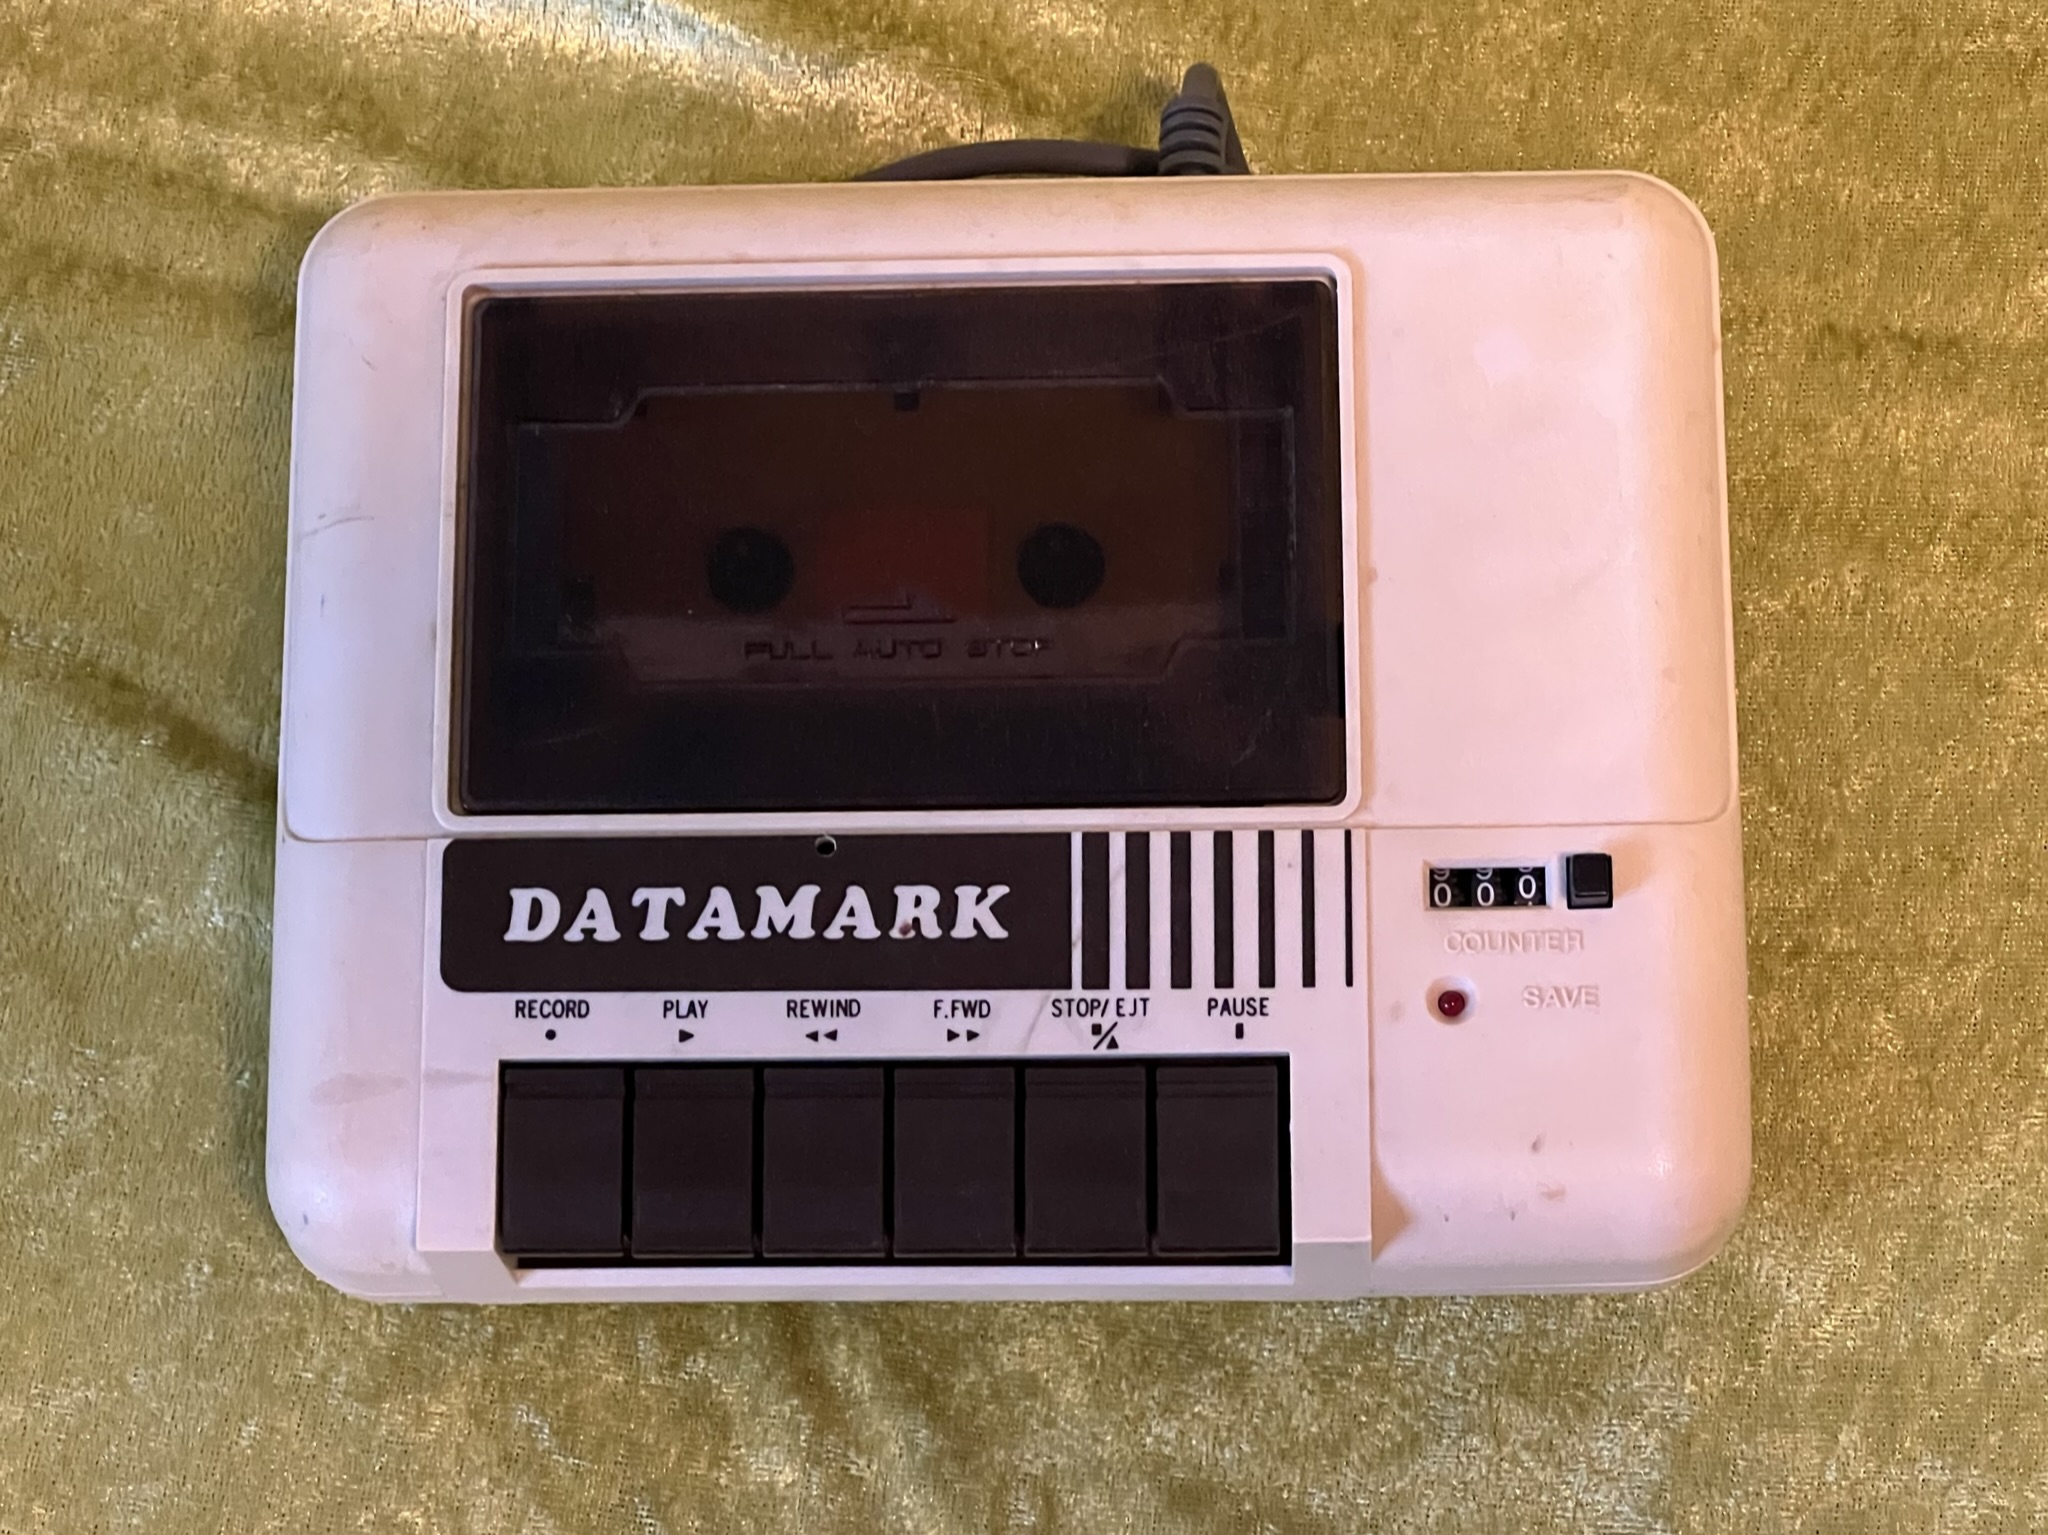 Datamark